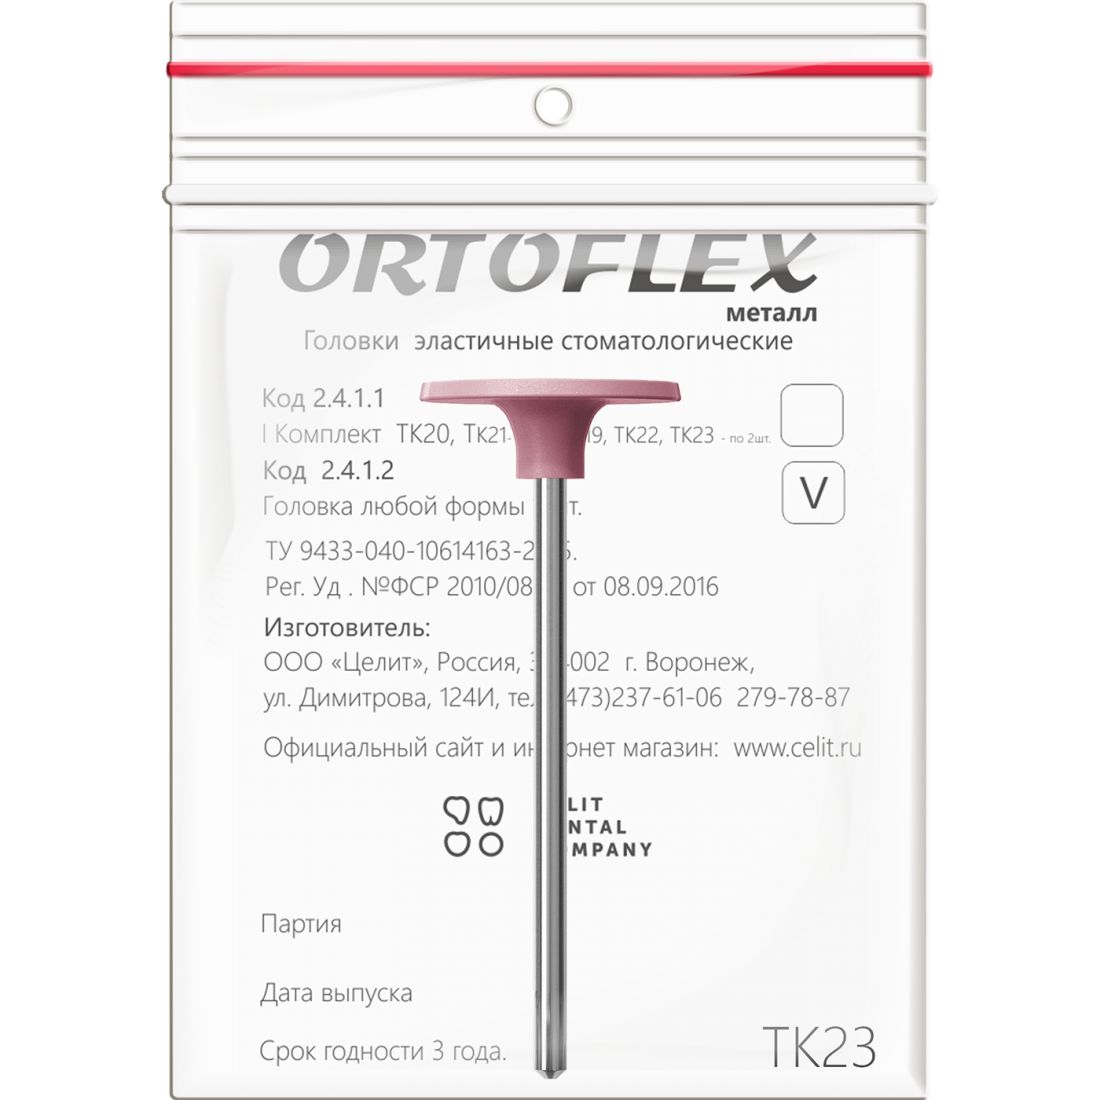 Ortoflex металл ТК23, головки Ортофлекс для обработки металла (1шт)